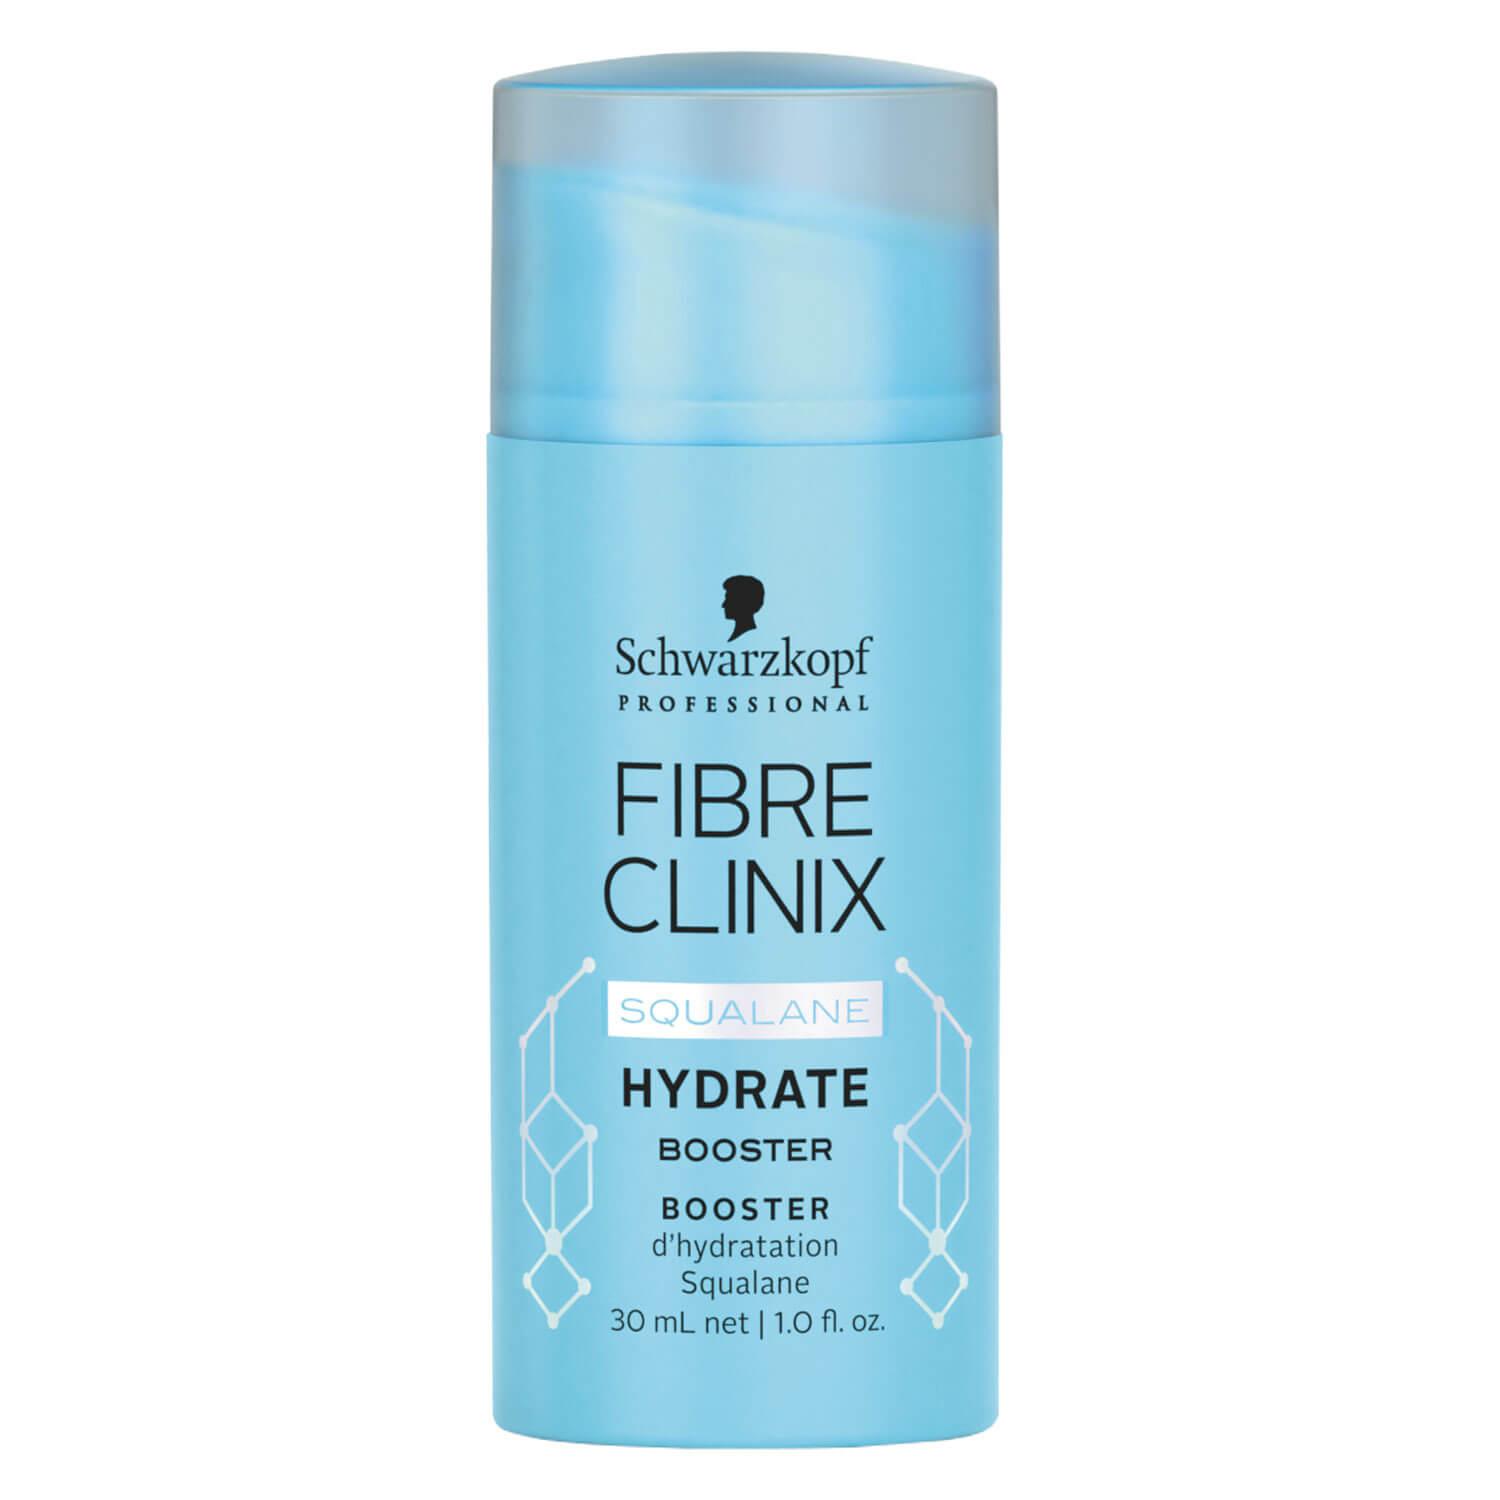 Fibre Clinix - Hydrate Booster